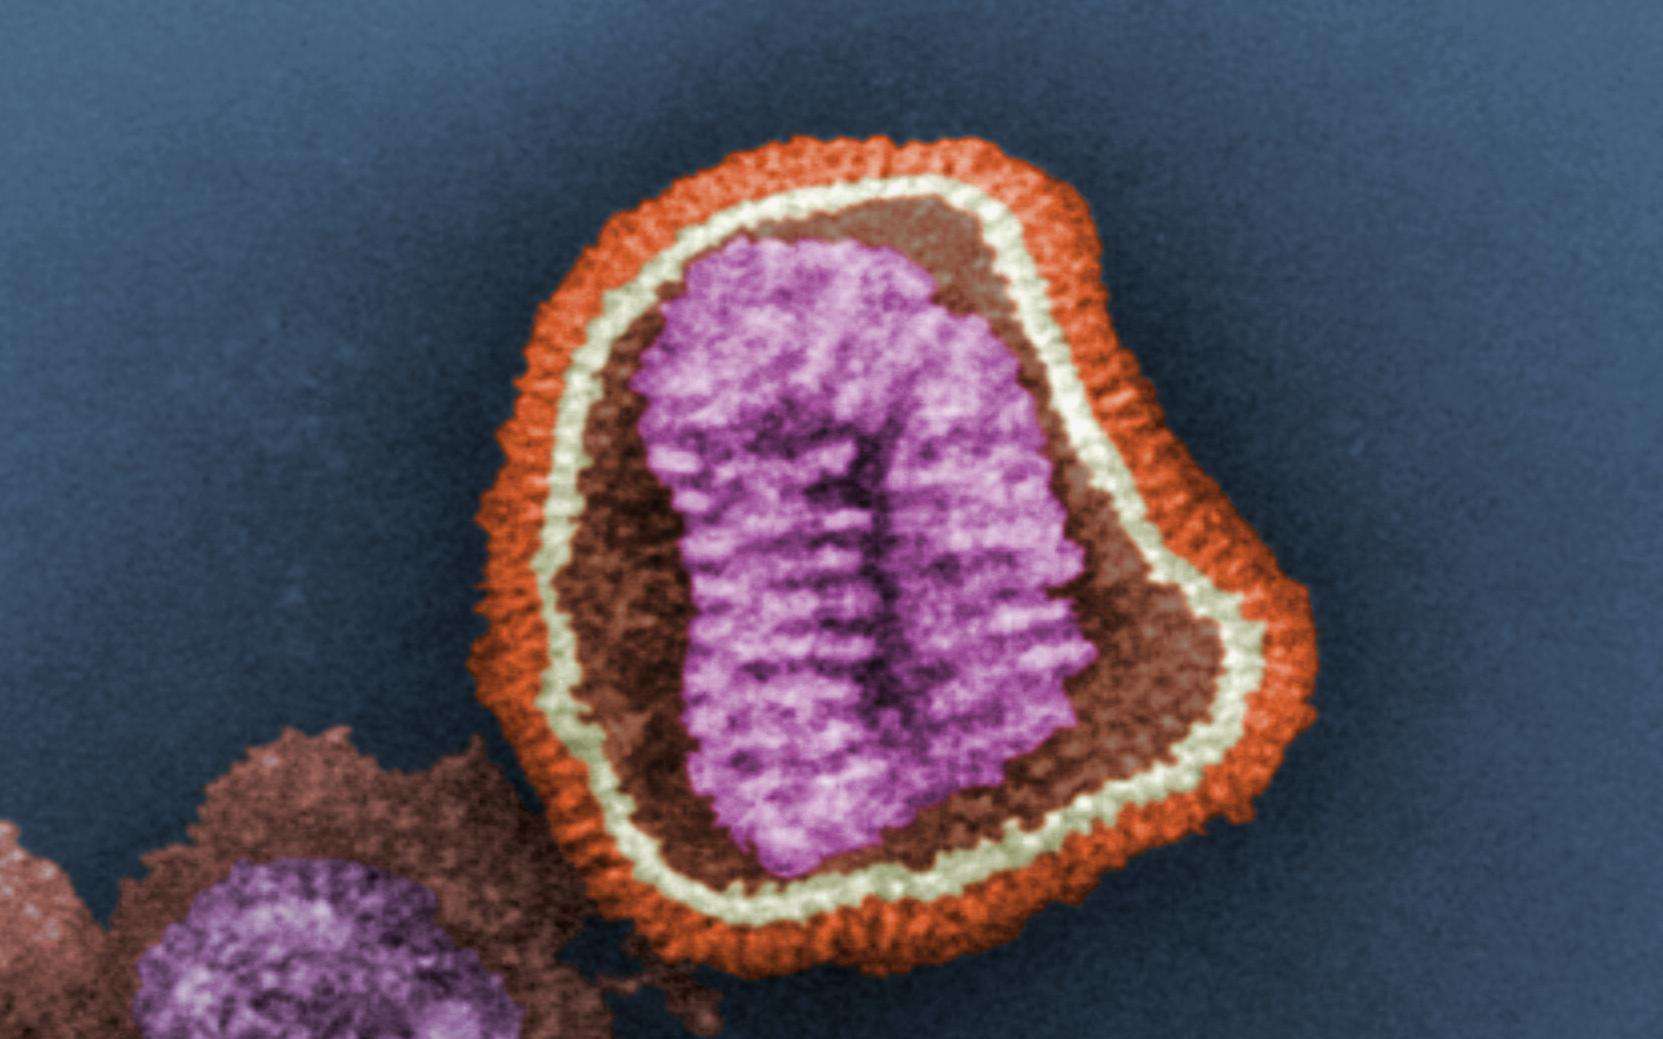 La grippe A(H7N9) causerait des symptômes particulièrement violents chez les adultes en bonne santé, tandis que les oiseaux ne montrent aucun signe de la maladie. Si les volatiles sont réellement à l'origine de la transmission à l'Homme, la tâche des scientifiques n’en sera que plus complexe, car il est impossible visuellement de détecter les animaux contaminés. © C. Goldsmith, CDC, DP